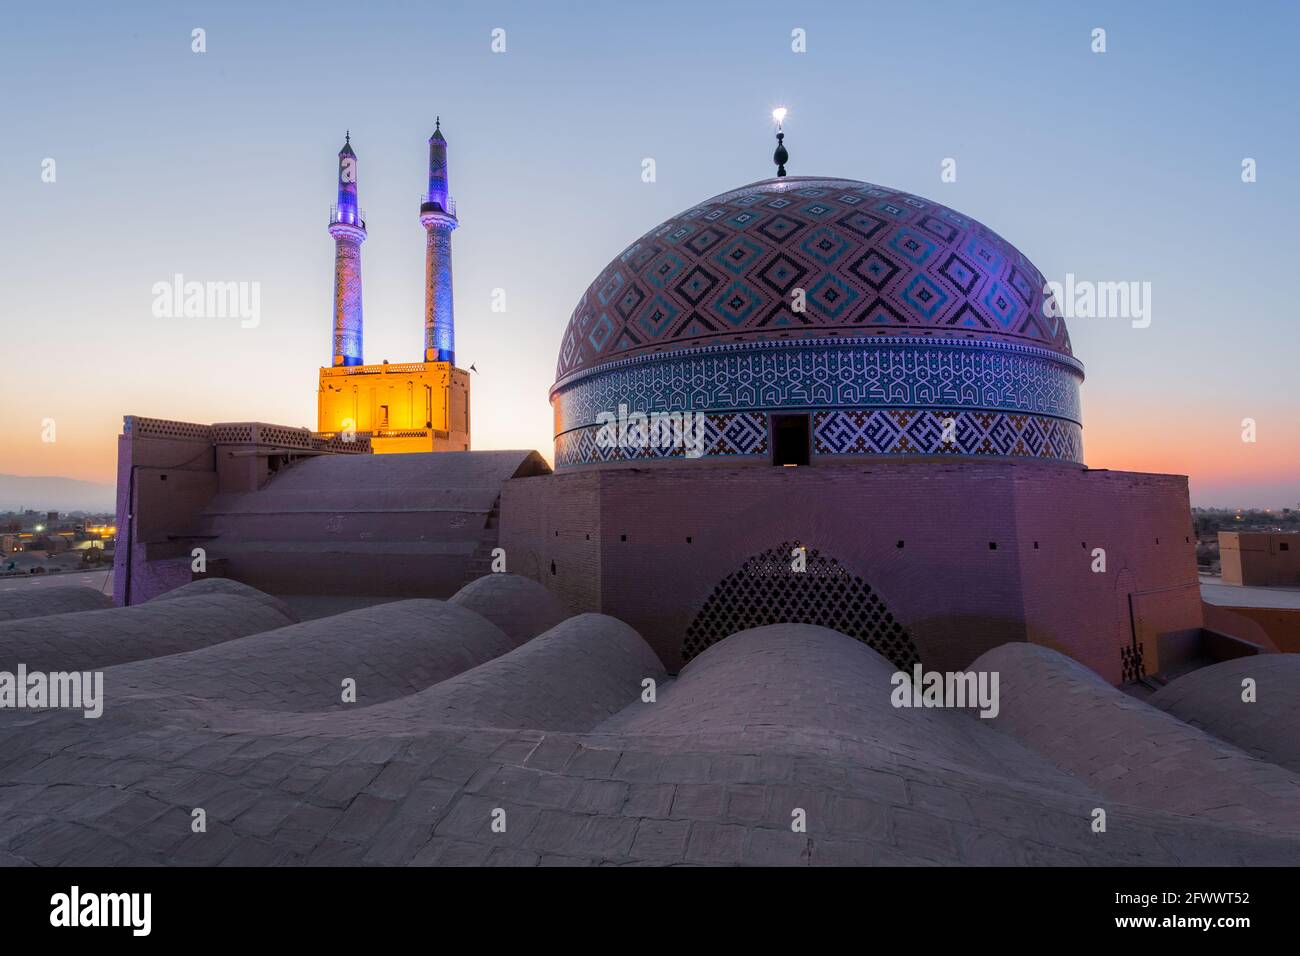 L'entrée de la mosquée Jameh de Yazd est couronnée par une paire de minarets, le plus haut d'Iran, 52 mètres de hauteur et 6 mètres de diamètre. Banque D'Images